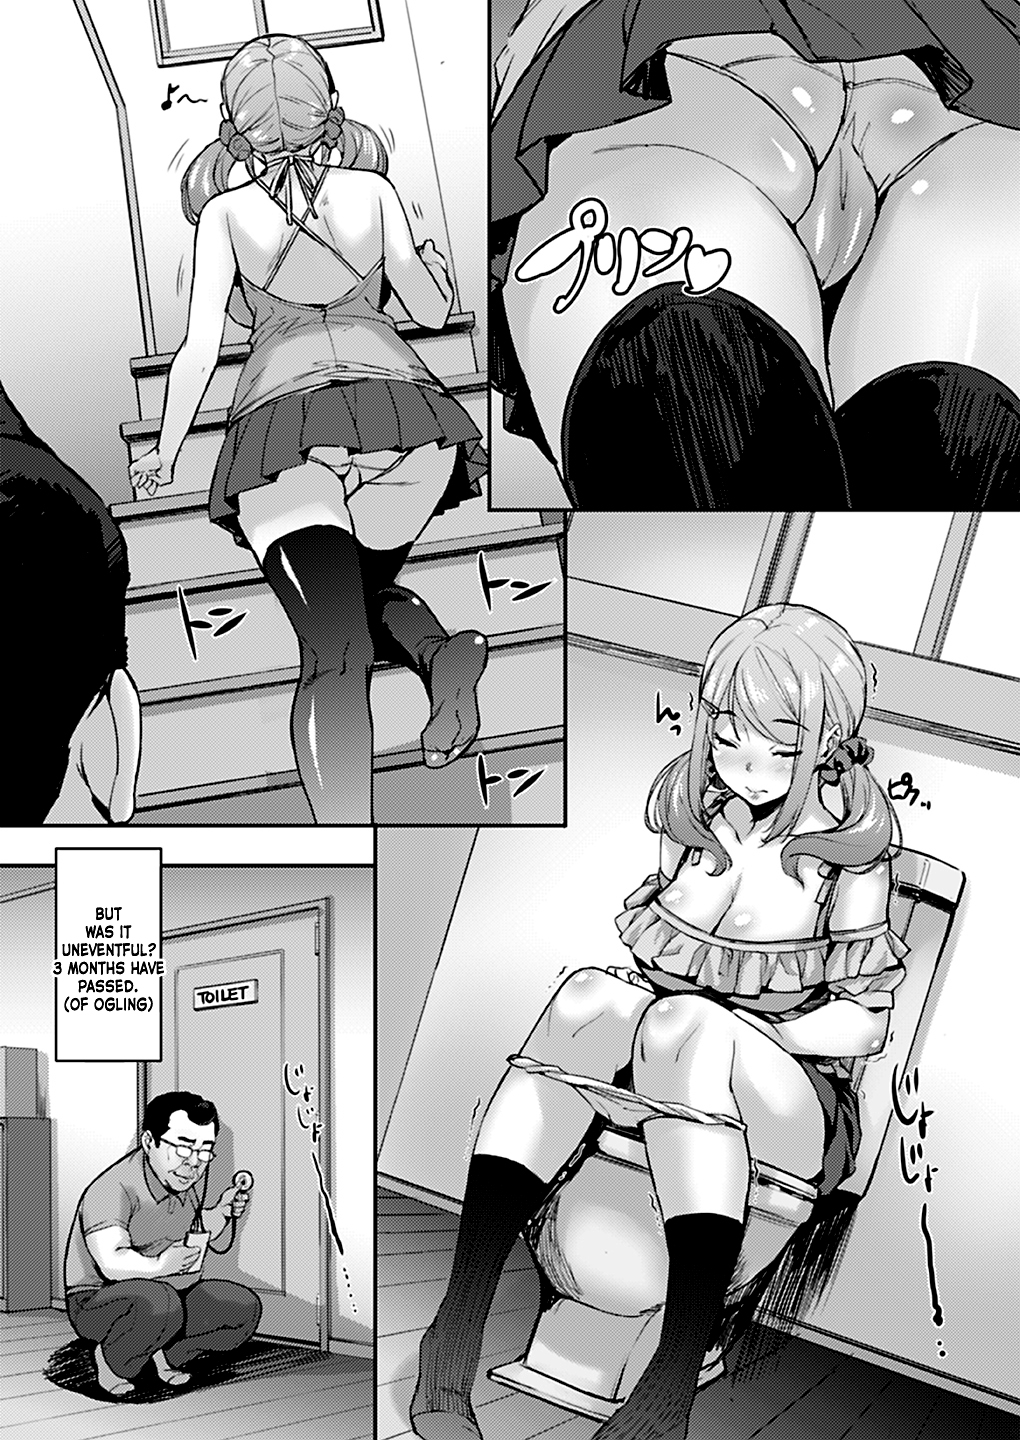 Anime sexcomics